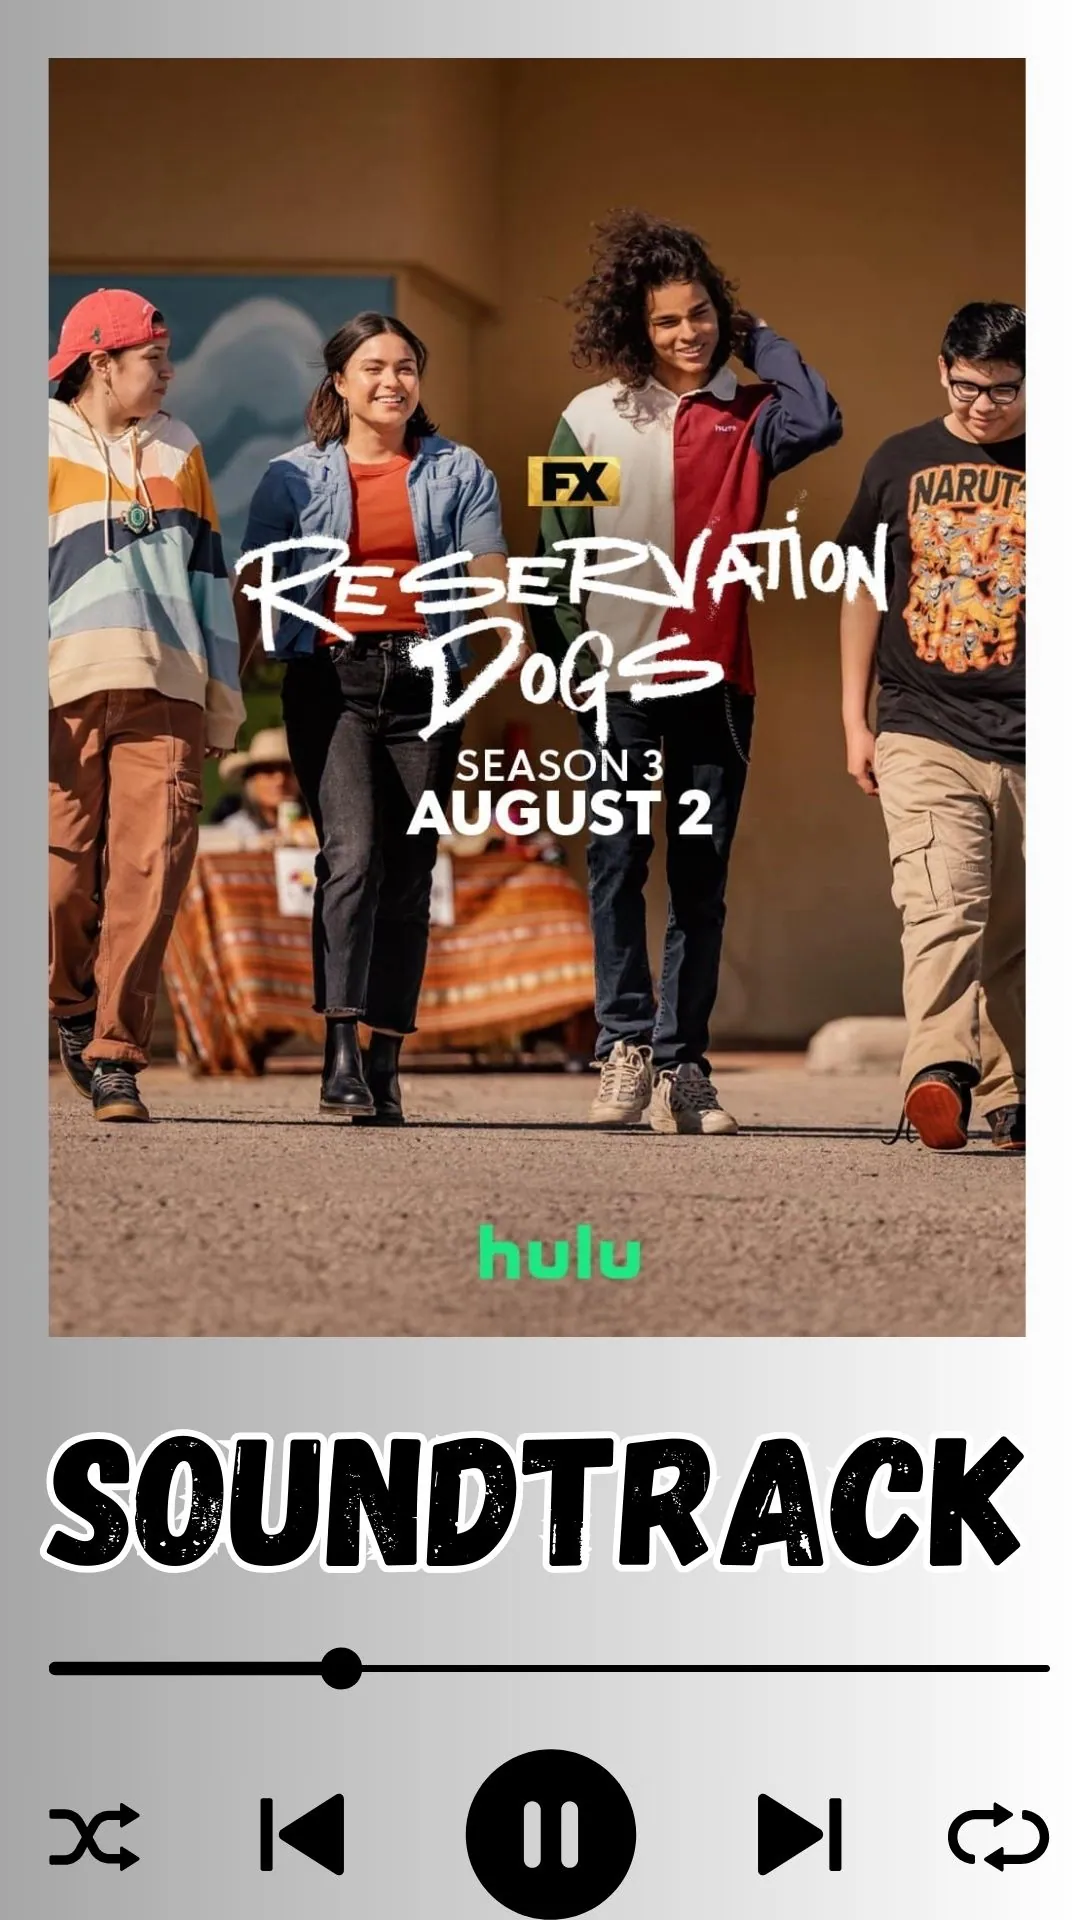 Reservation Dogs Season 3 Soundtrack